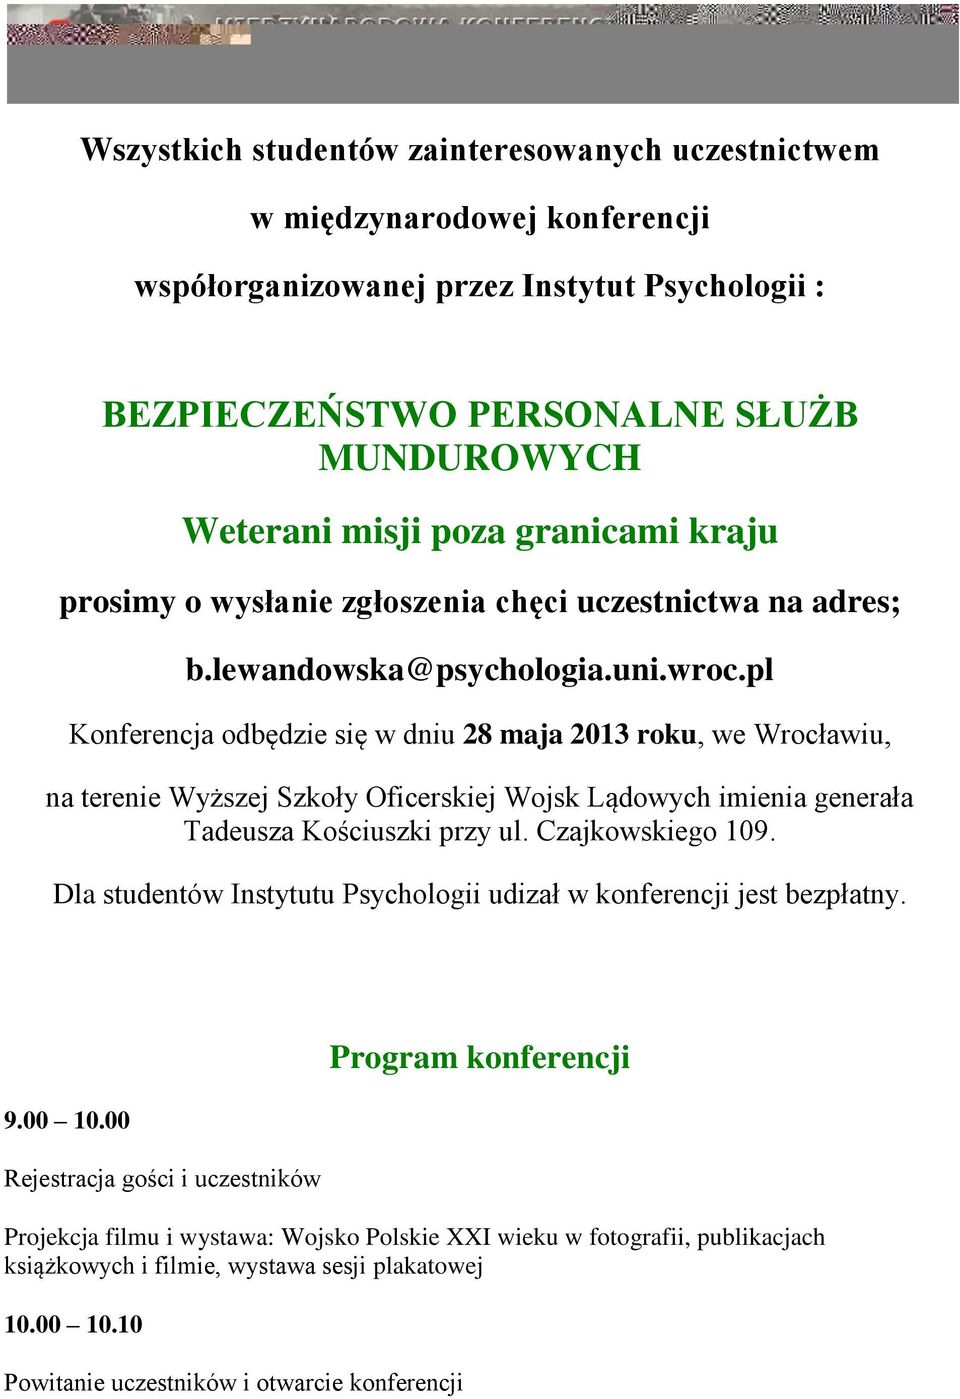 pl Konferencja odbędzie się w dniu 28 maja 2013 roku, we Wrocławiu, na terenie Wyższej Szkoły Oficerskiej Wojsk Lądowych imienia generała Tadeusza Kościuszki przy ul. Czajkowskiego 109.